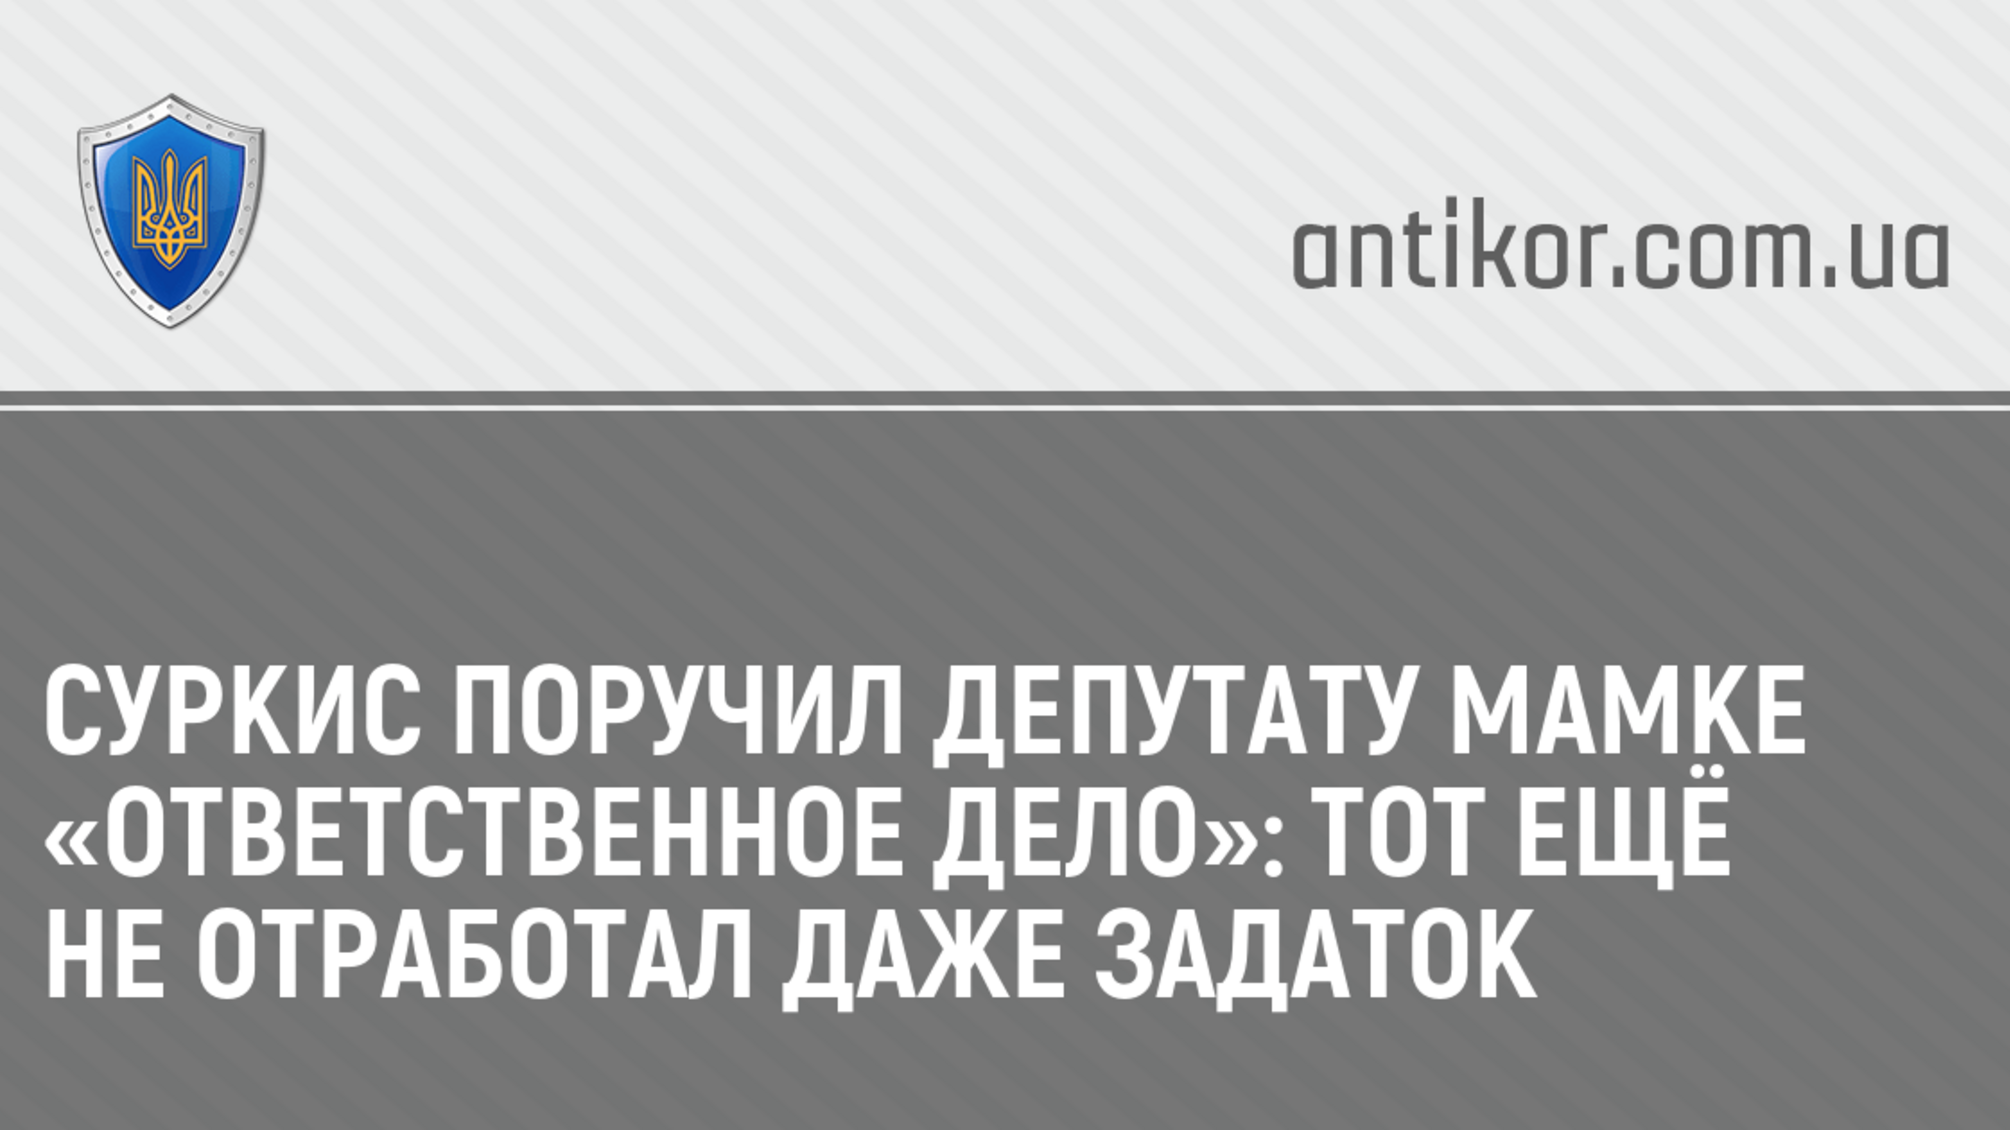 Суркис поручил депутату Мамке «ответственное дело»: тот ещё не отработал даже задаток